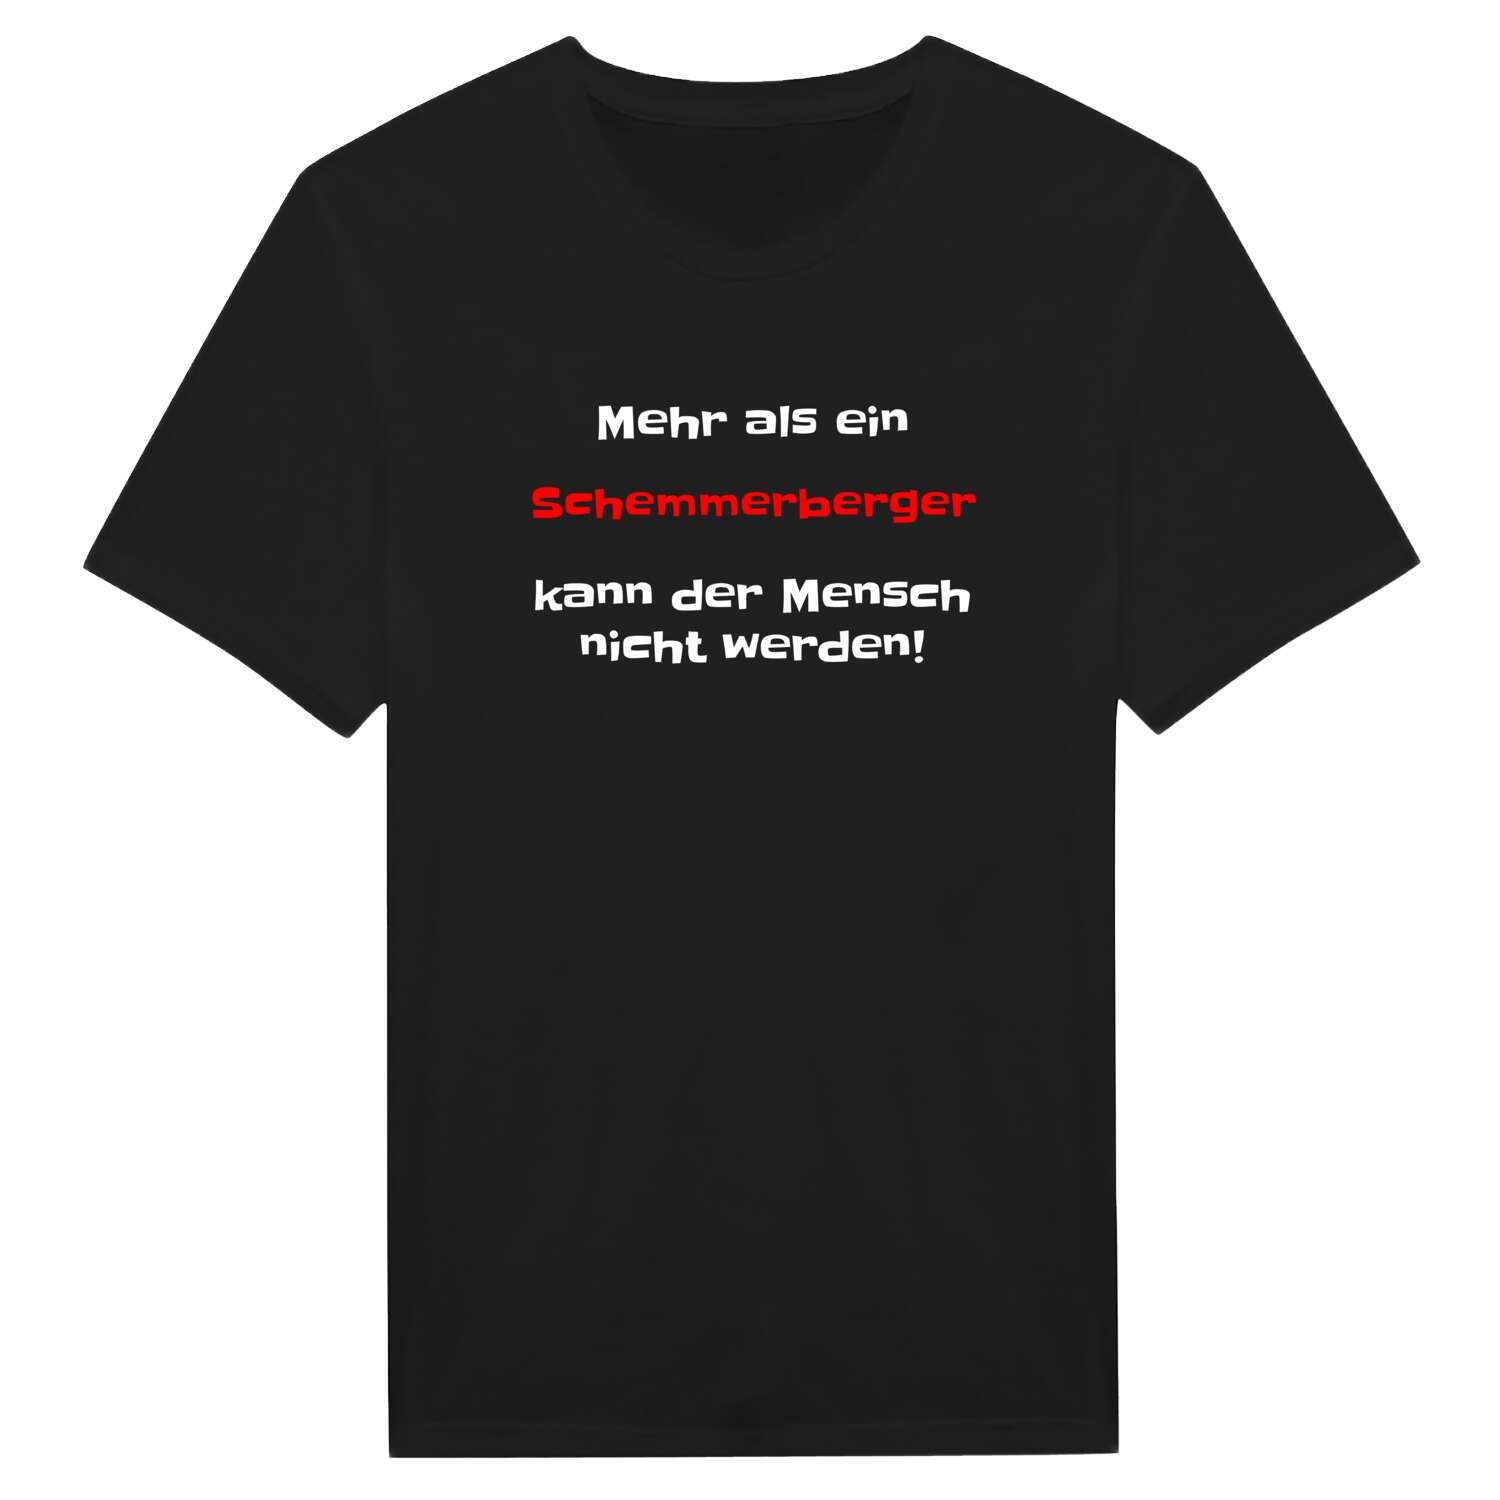 Schemmerberg T-Shirt »Mehr als ein«